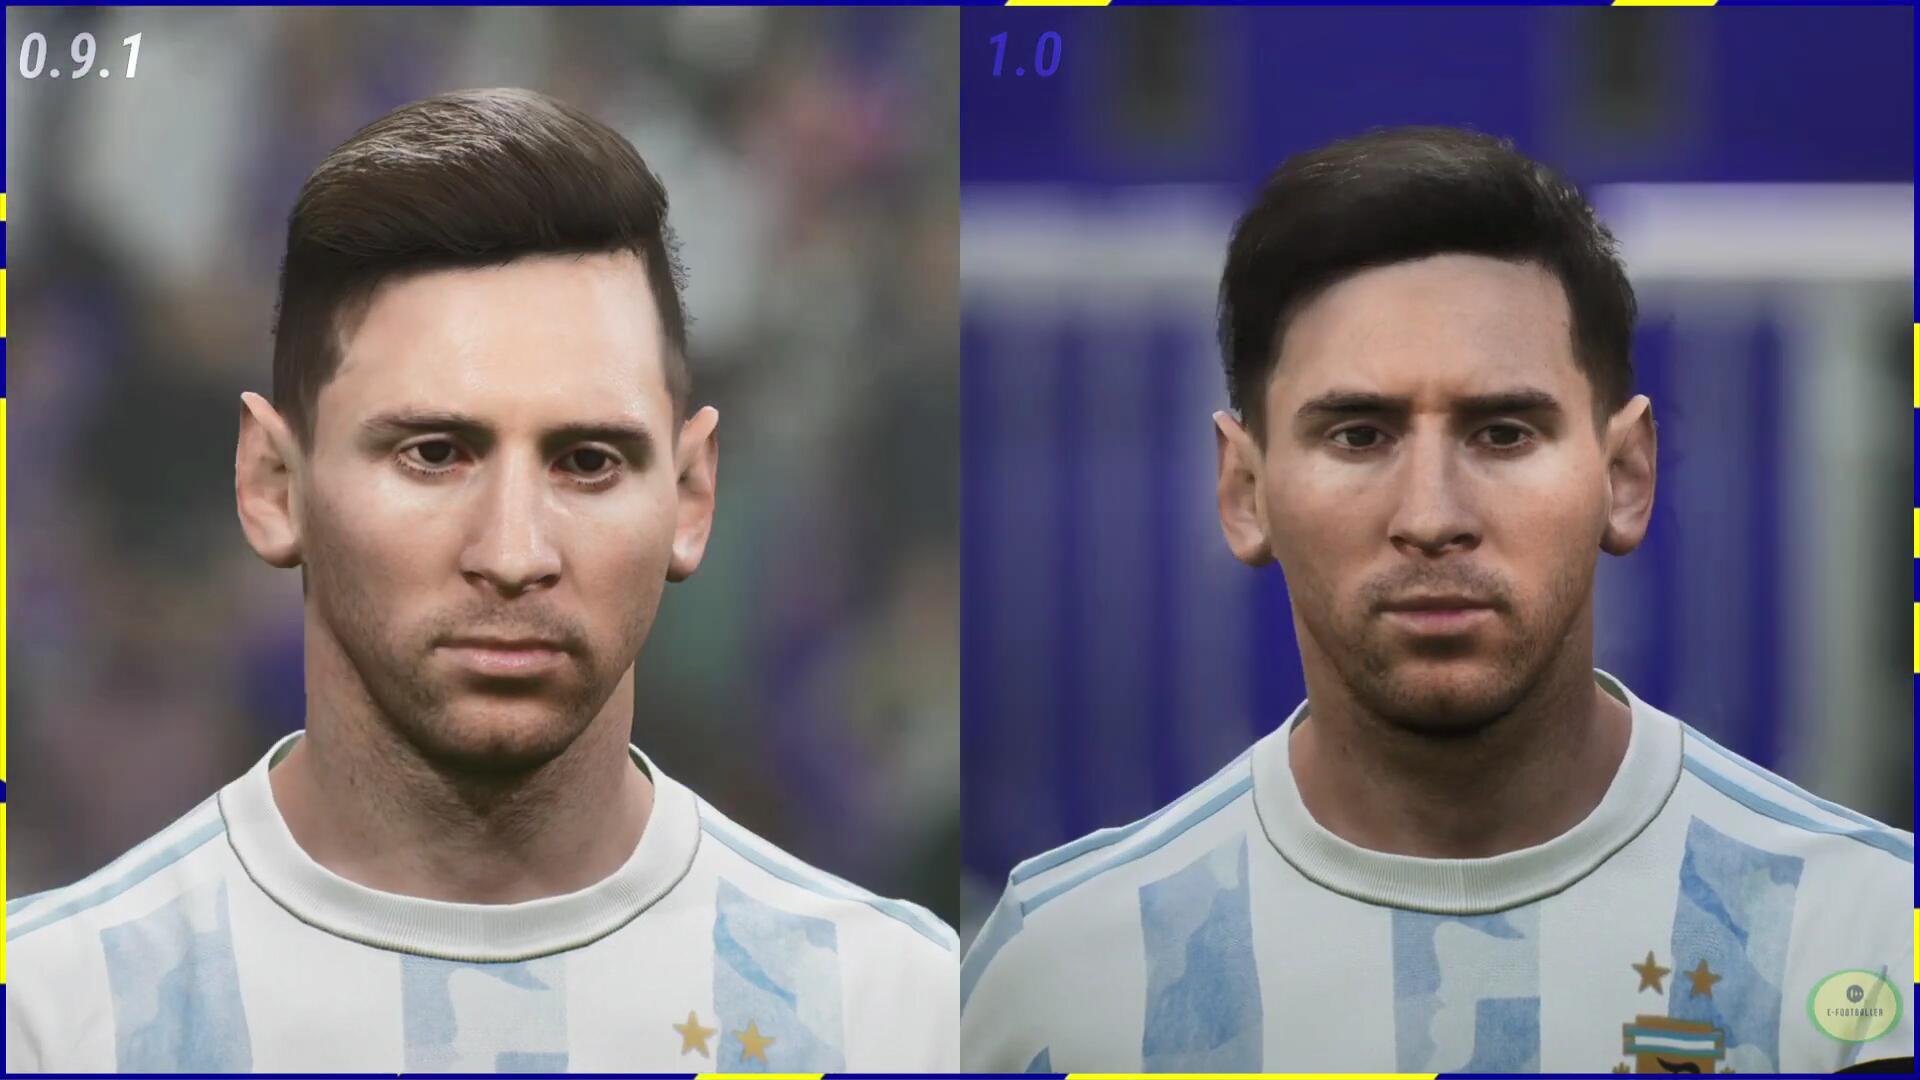 《實況2022》1.0更新後球員面部表情對比：提升明顯